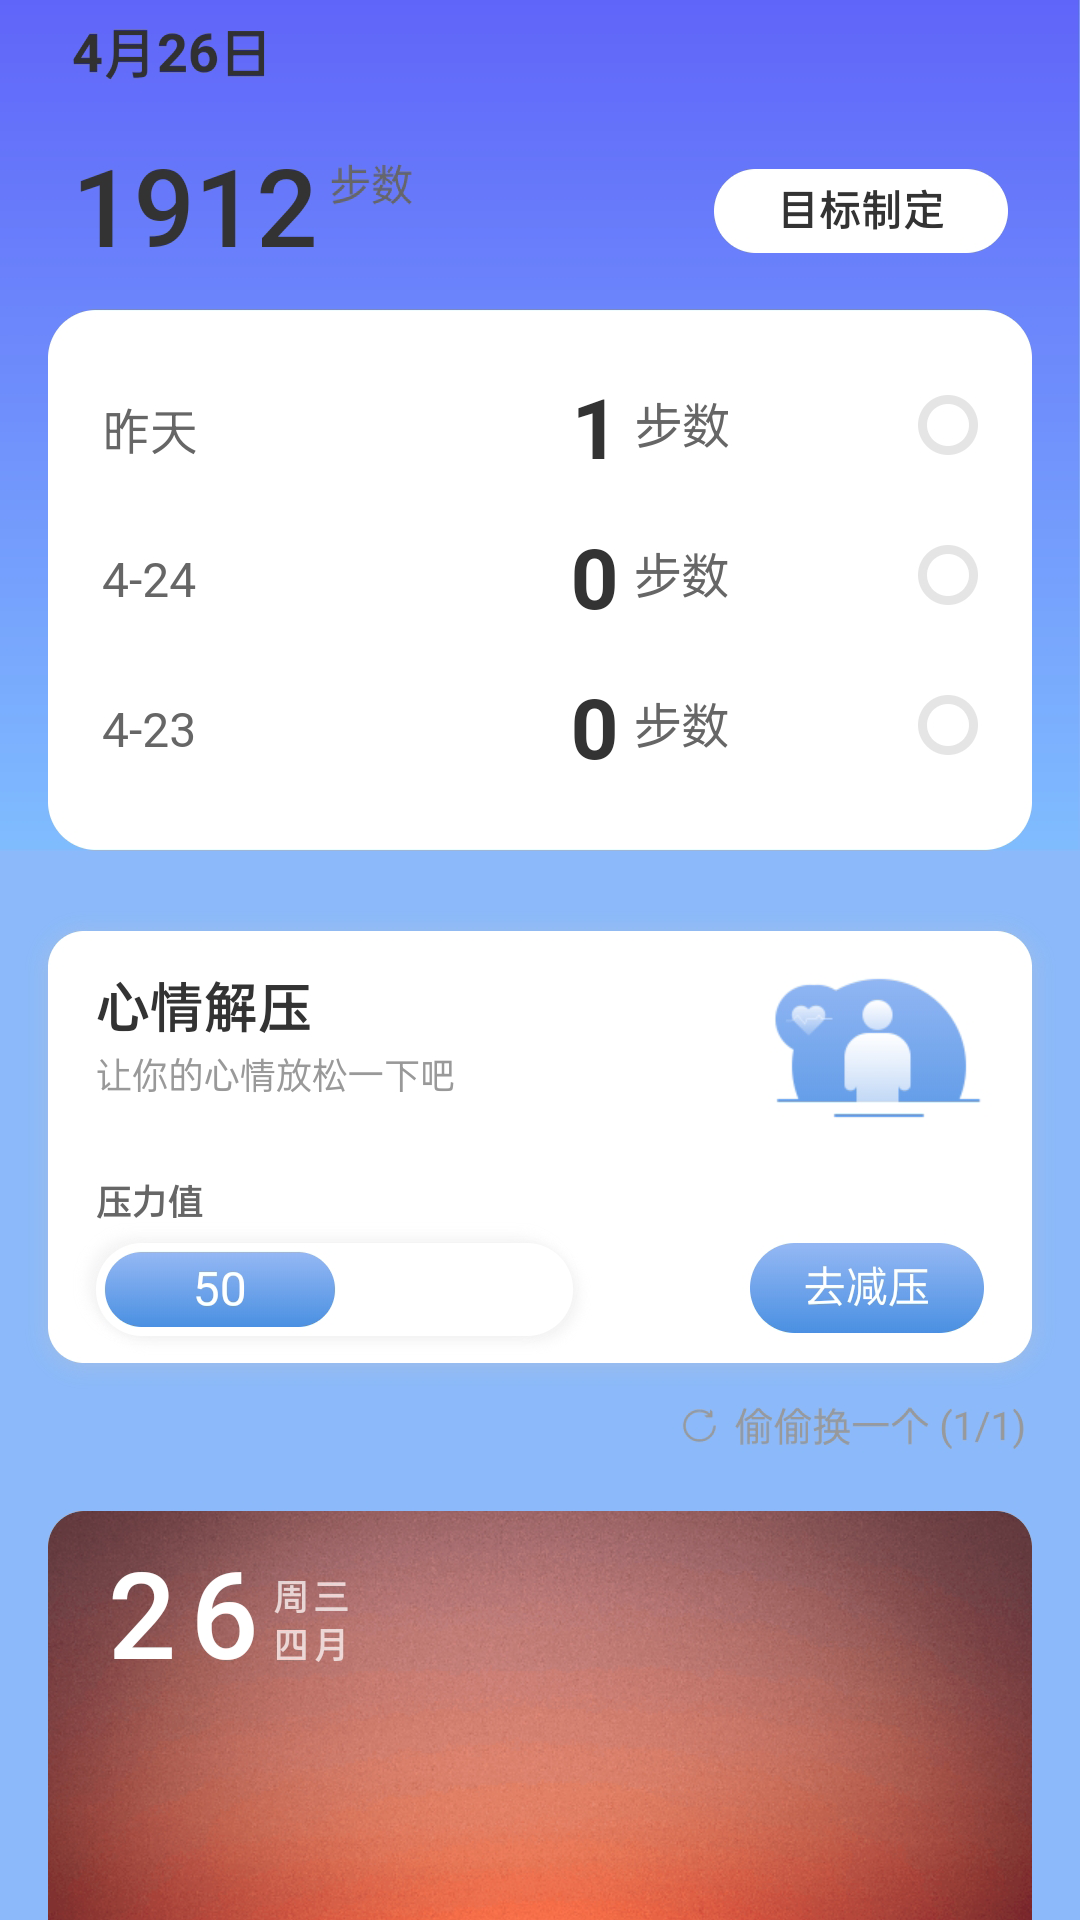 悦步走路app下载官方版-悦步走路v2.0.5 安卓版